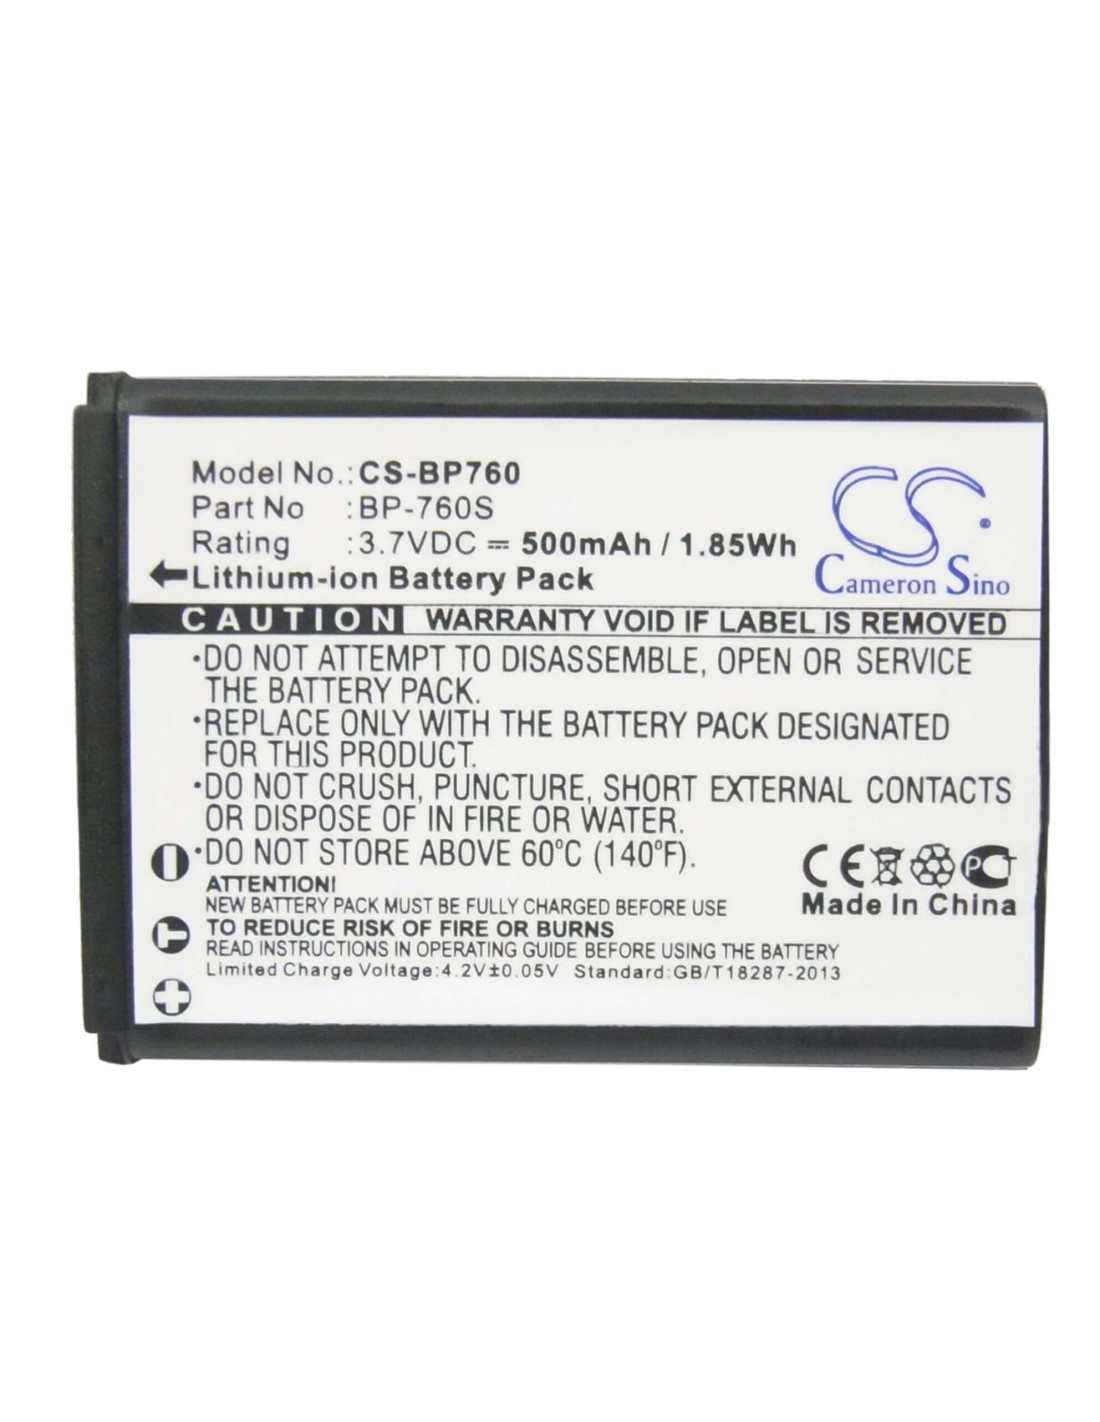 Battery for Kyocera I4r, I4rb, I4rbk 3.7V, 500mAh - 1.85Wh